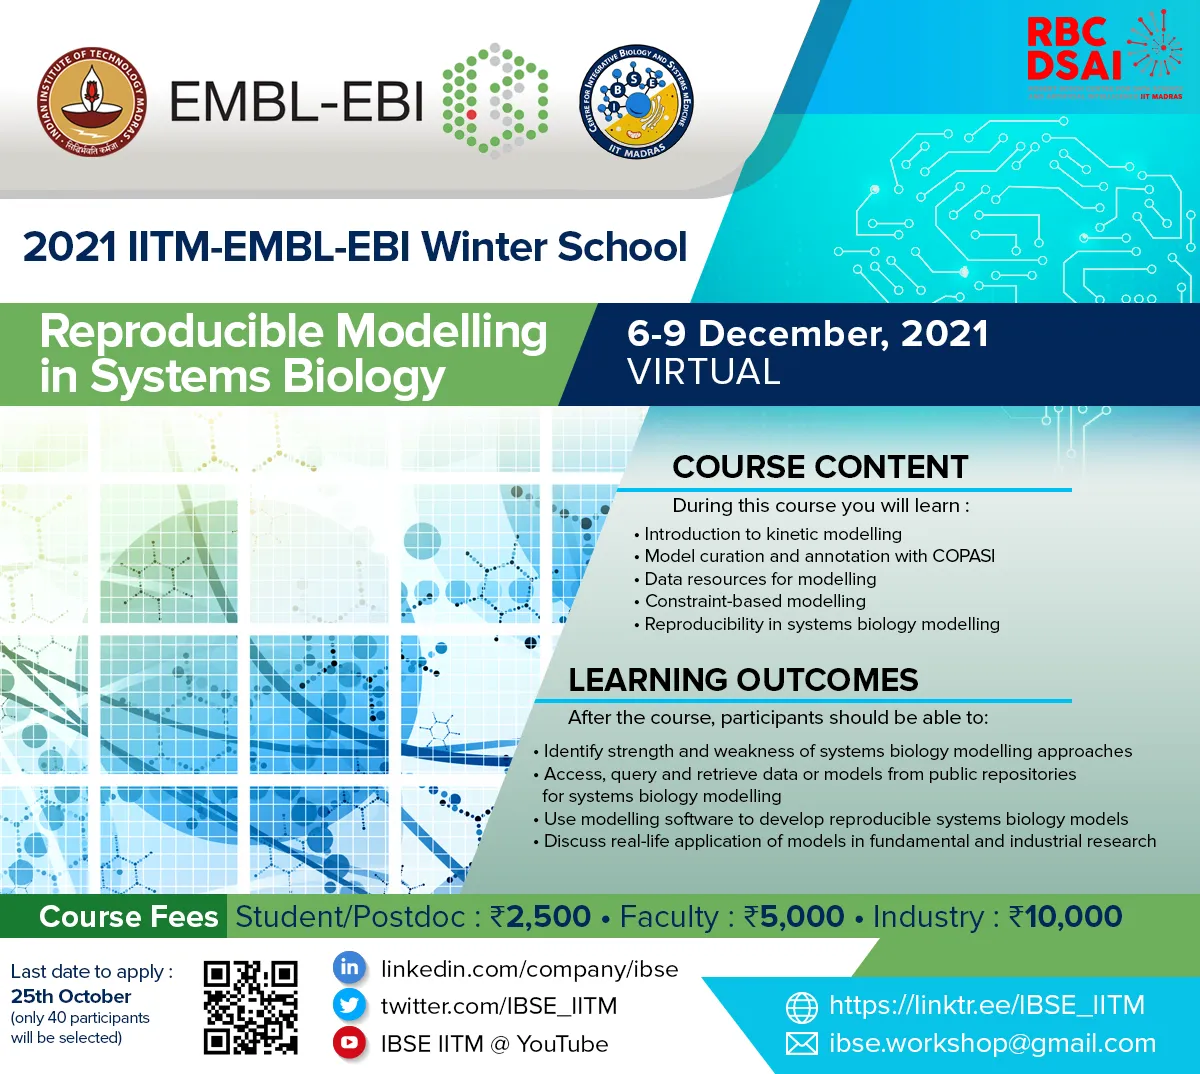 IITM-EMBL-EBI Winter School